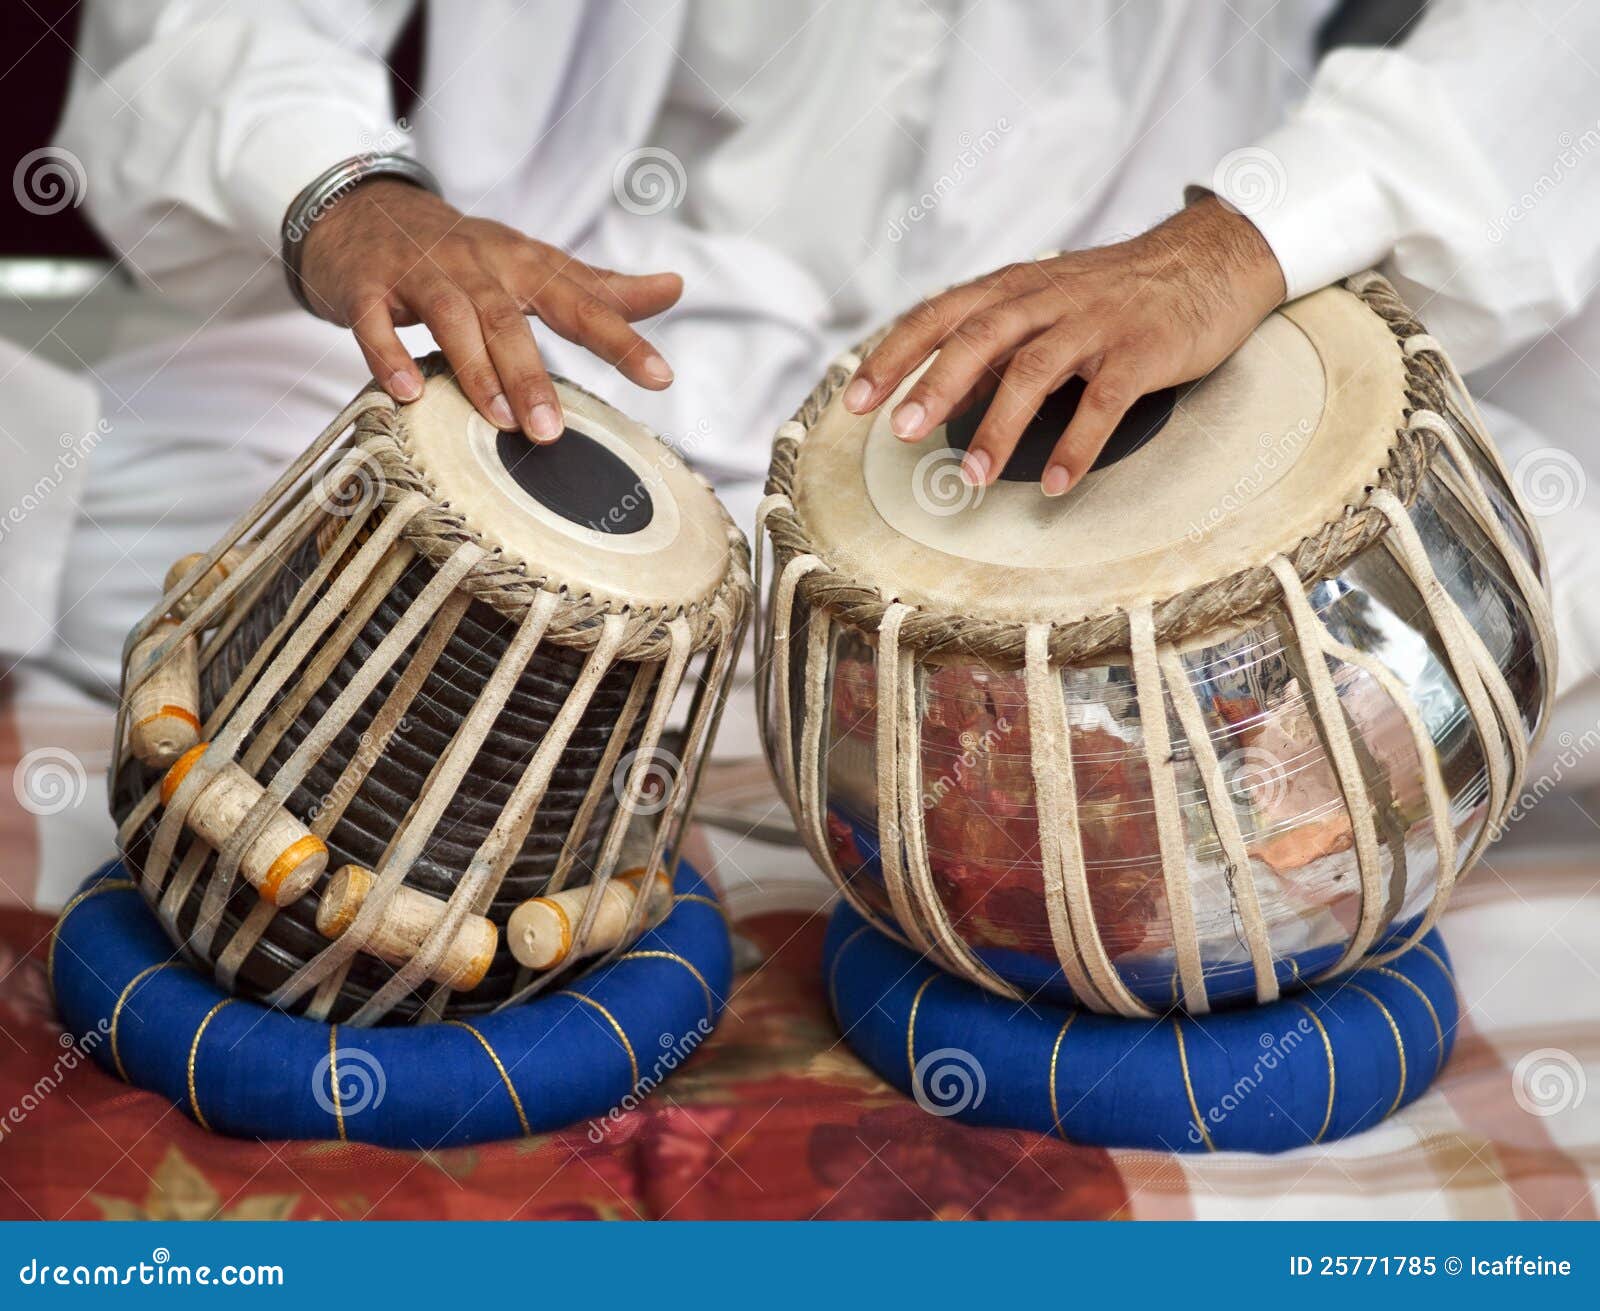 sikh instrument-drum